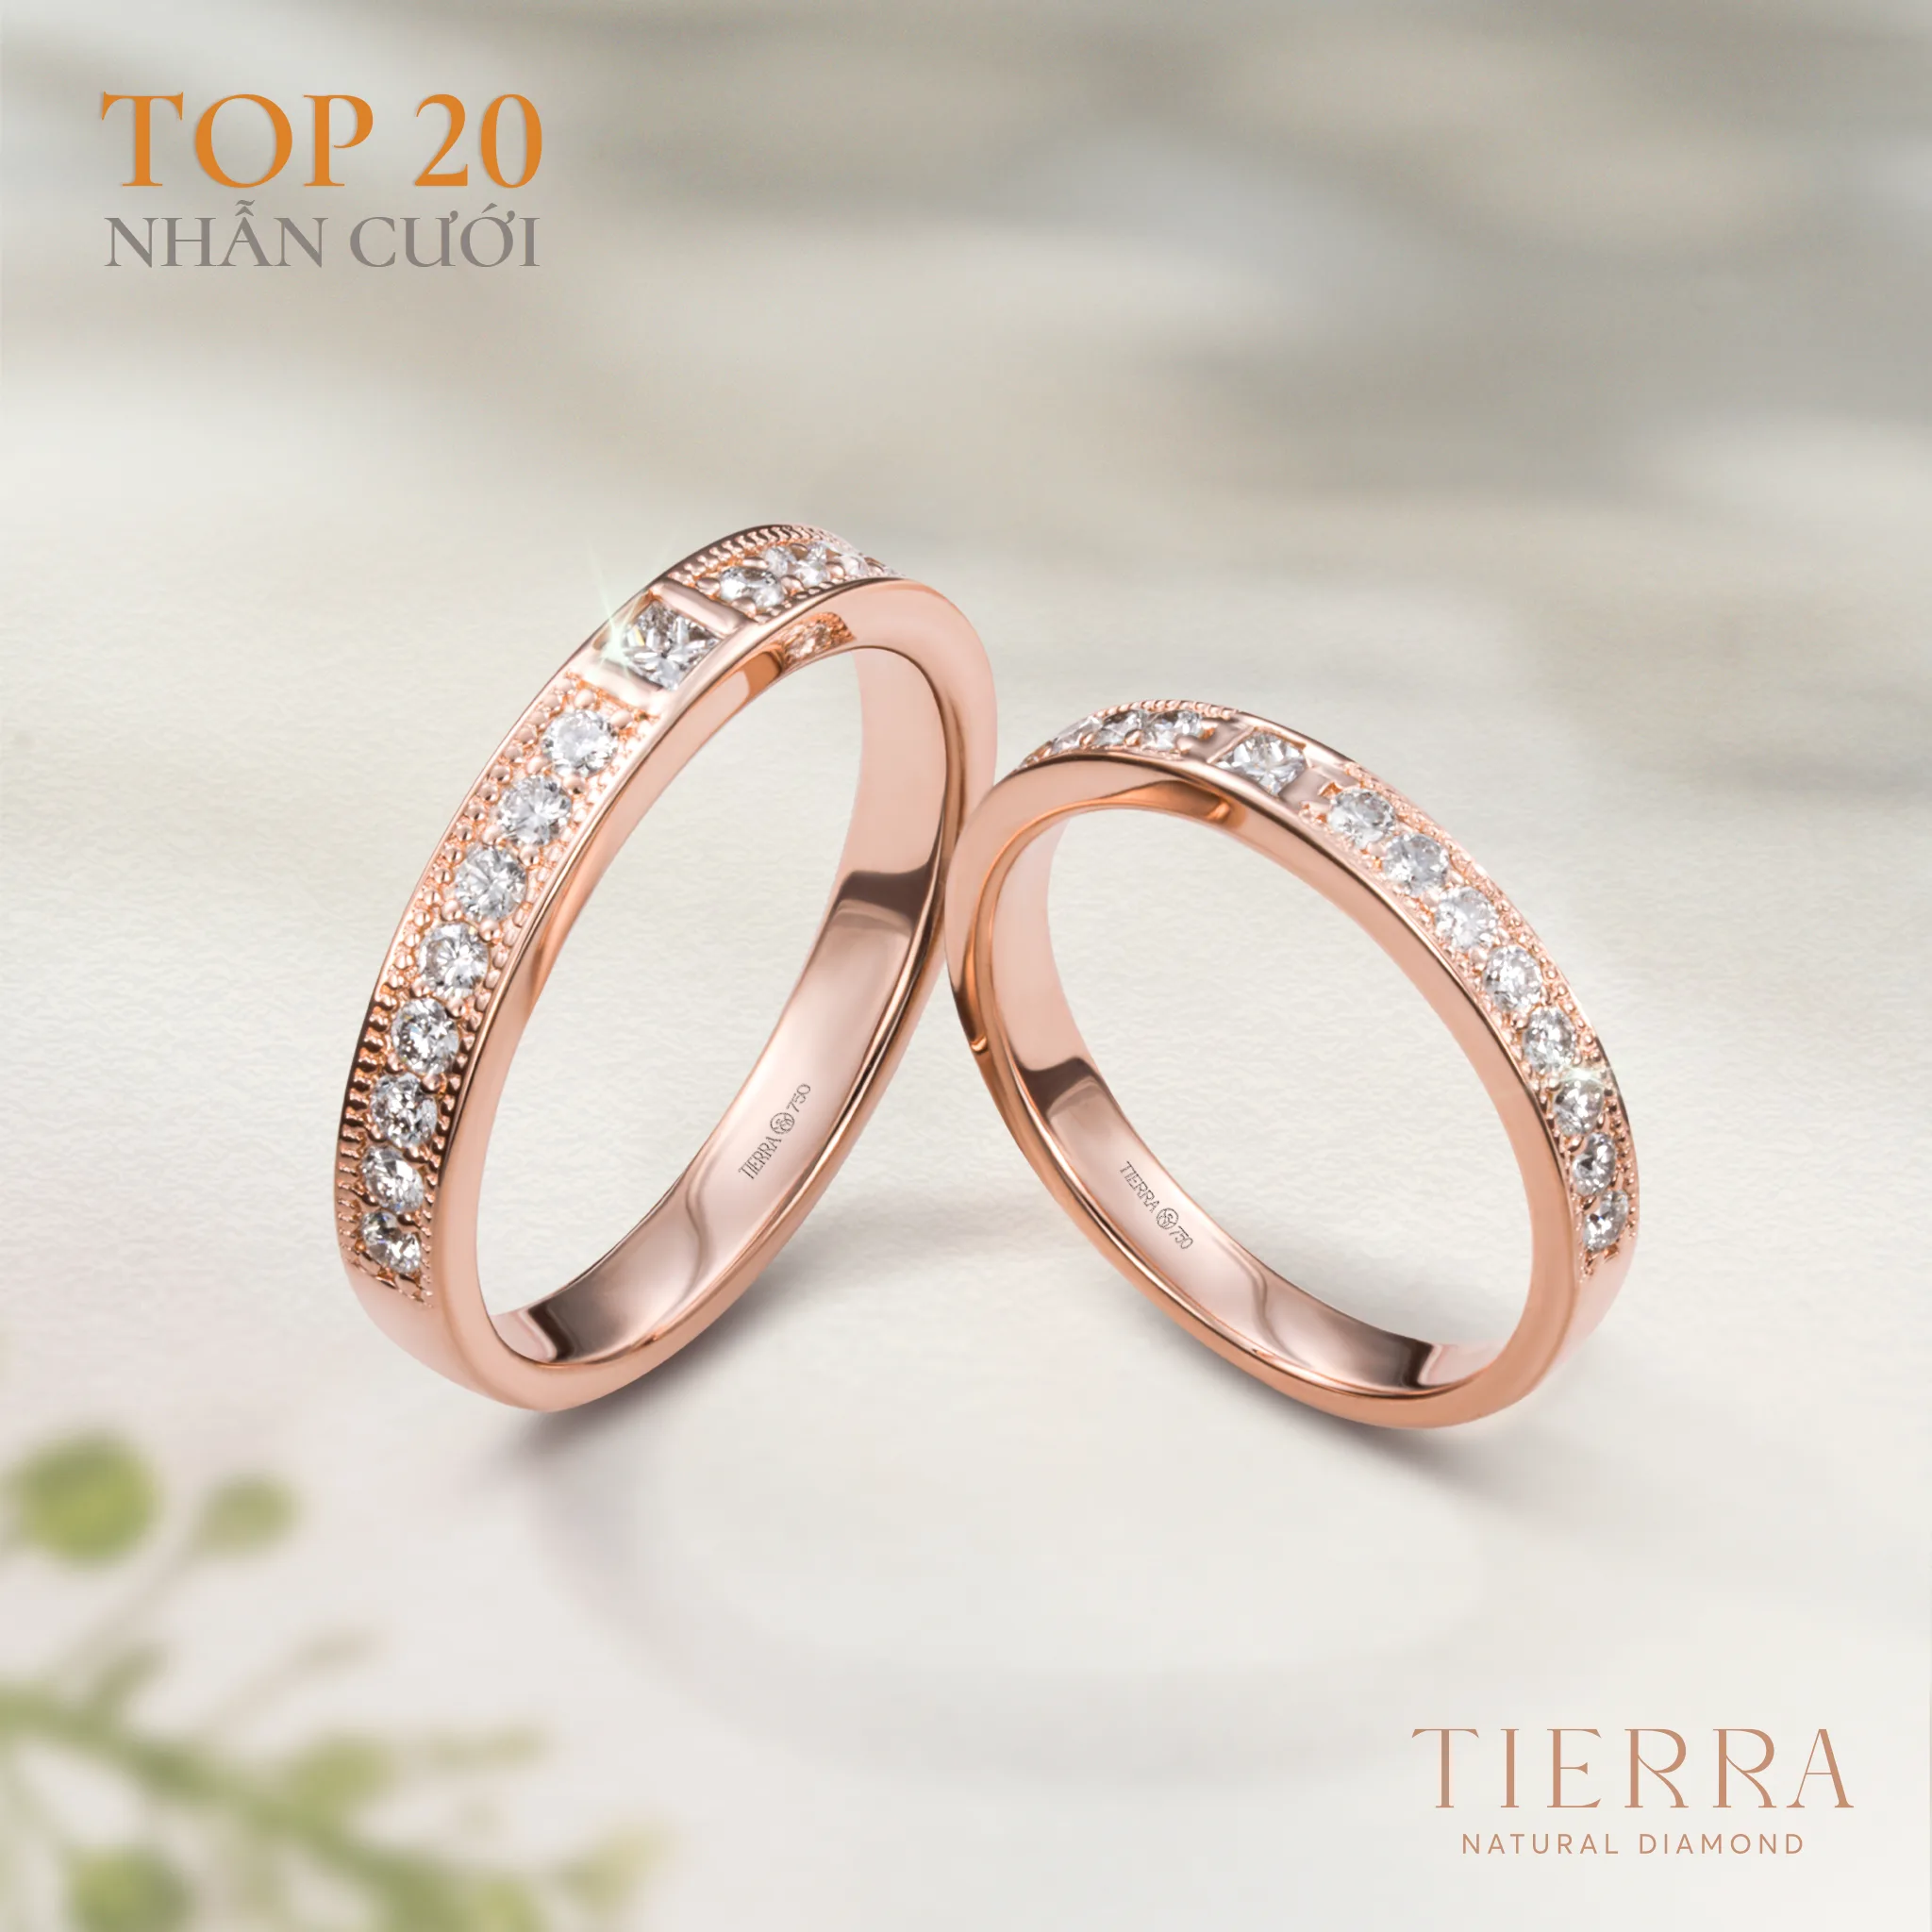 Nhẫn cưới NCC2059 thuộc “top 3” mẫu nhẫn cưới vàng hồng được ưa chuộng tại Tierra 